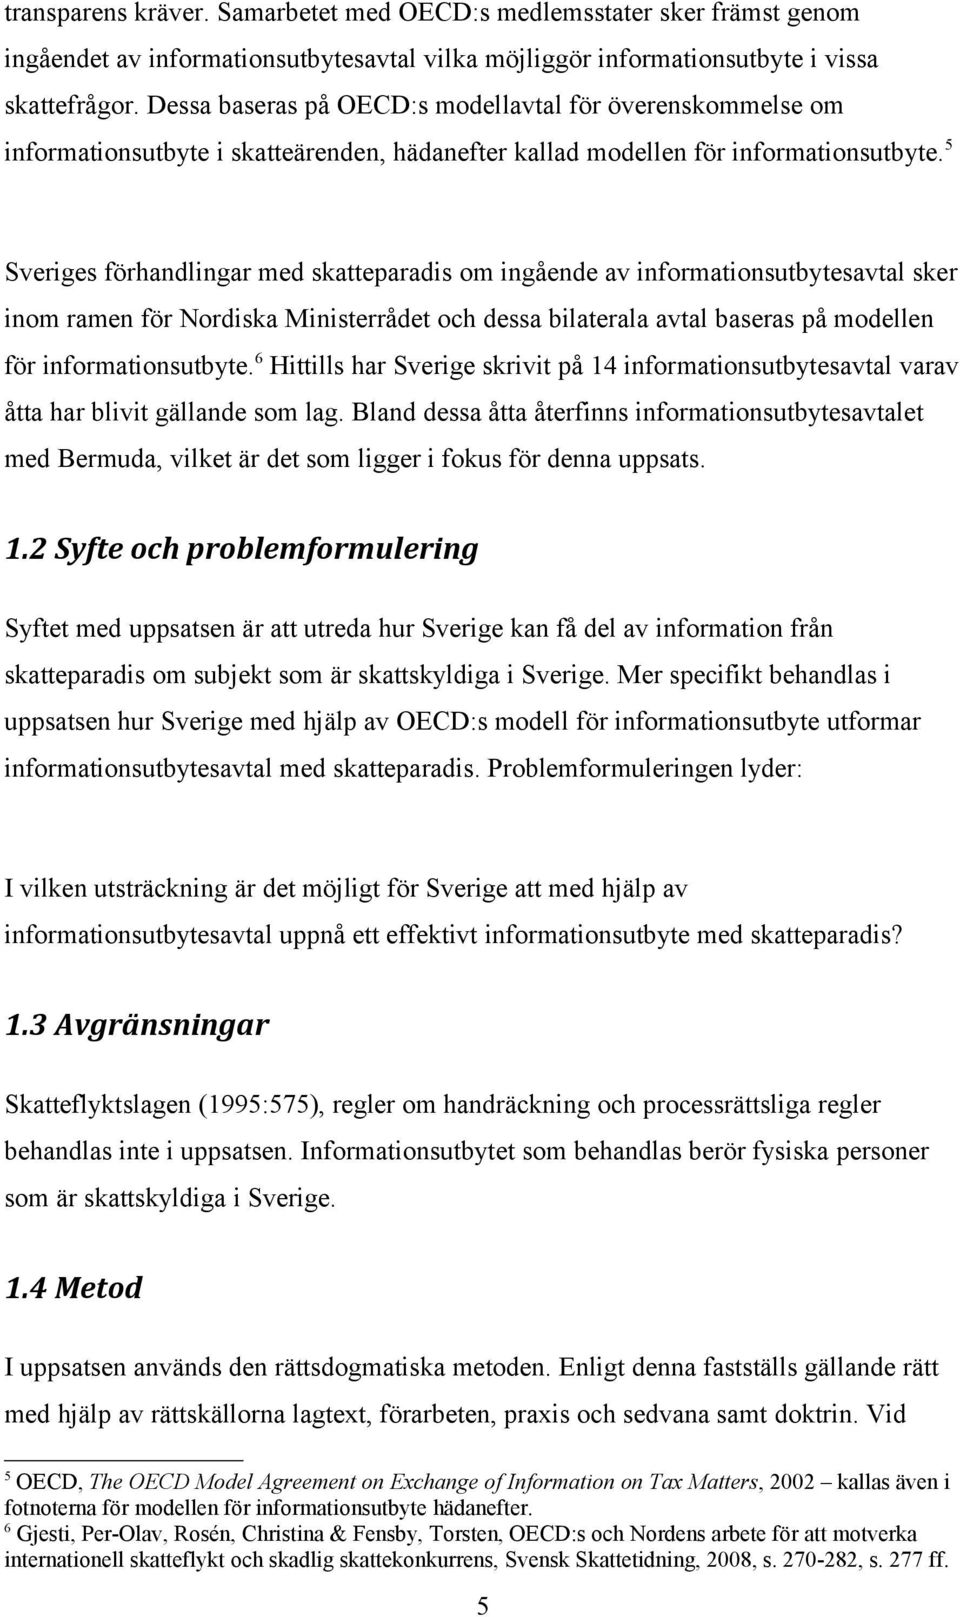 5 Sveriges förhandlingar med skatteparadis om ingående av informationsutbytesavtal sker inom ramen för Nordiska Ministerrådet och dessa bilaterala avtal baseras på modellen för informationsutbyte.